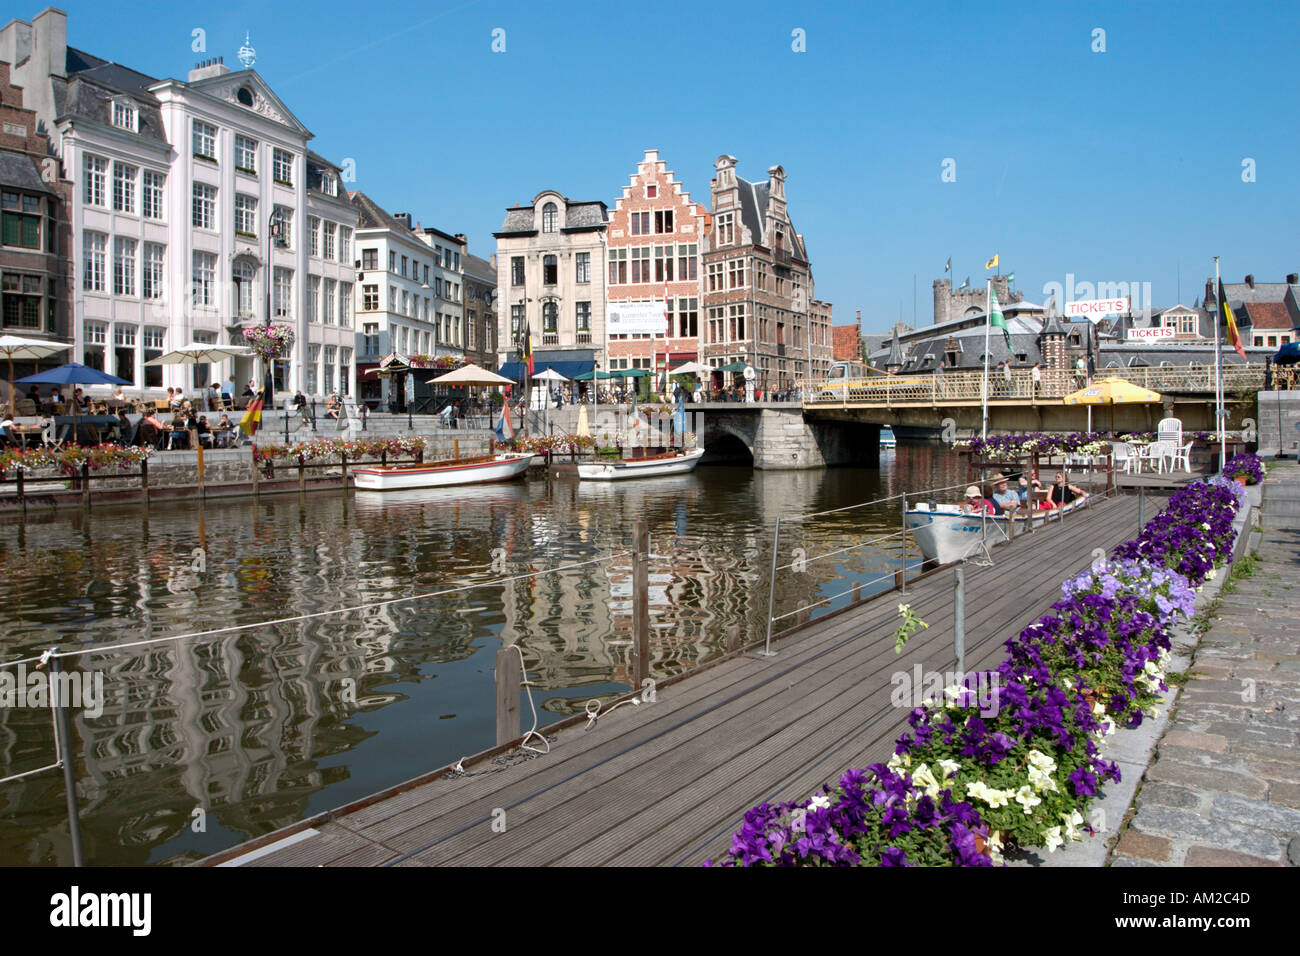 Ausflugsboote am Graslei Blick auf Korenlei im Zentrum Stadt, Gent, Belgien Stockfoto